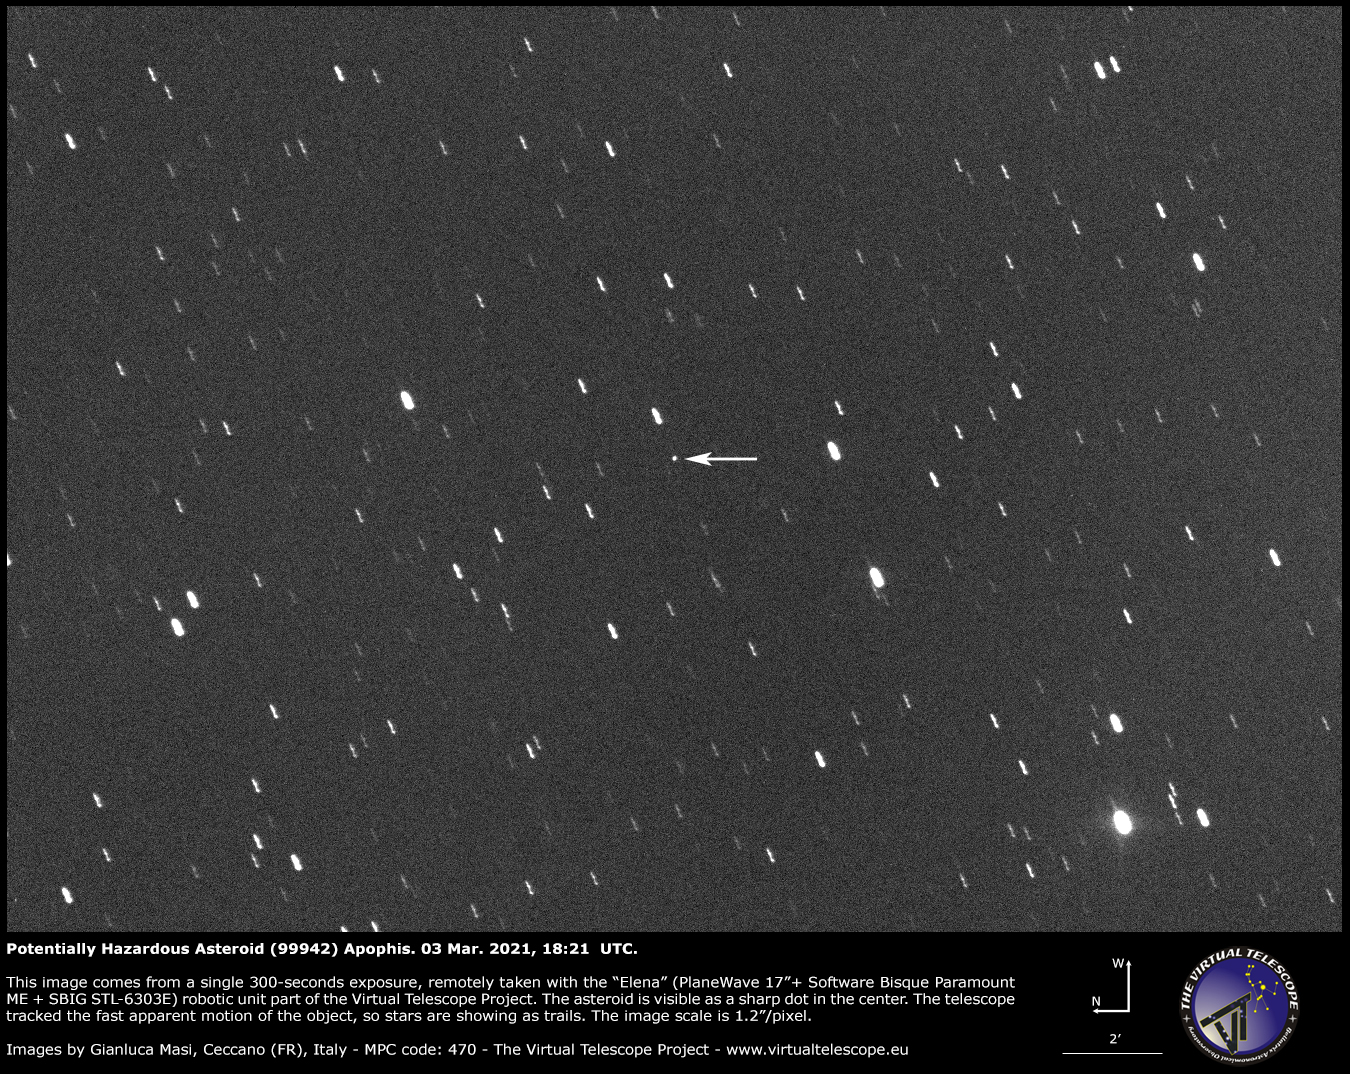 Potentially Hazardous Asteroid (99942) Apophis: 03 Mar. 2021.